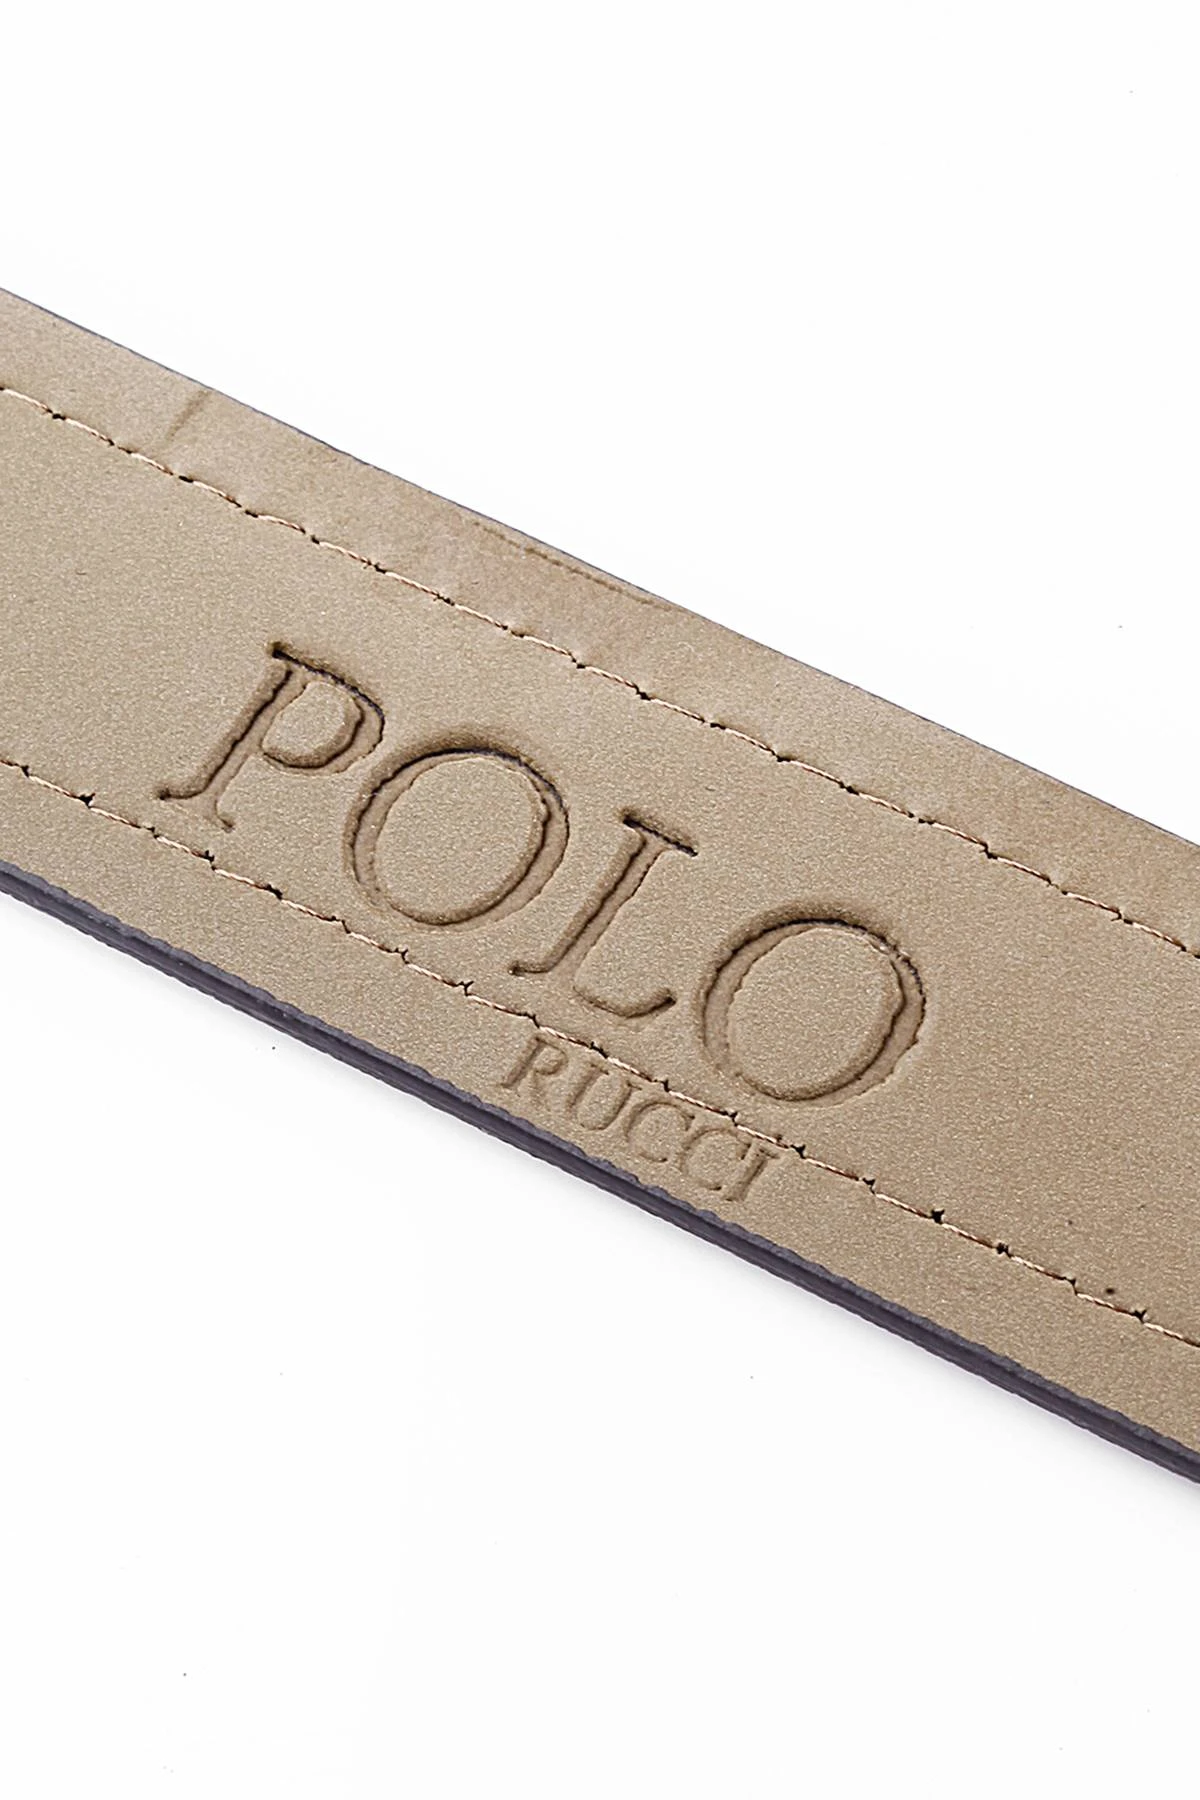 Polo Rucci Erkek Kemer 120CM Kutulu ve Hediye Paketinde KMR-2011-S120